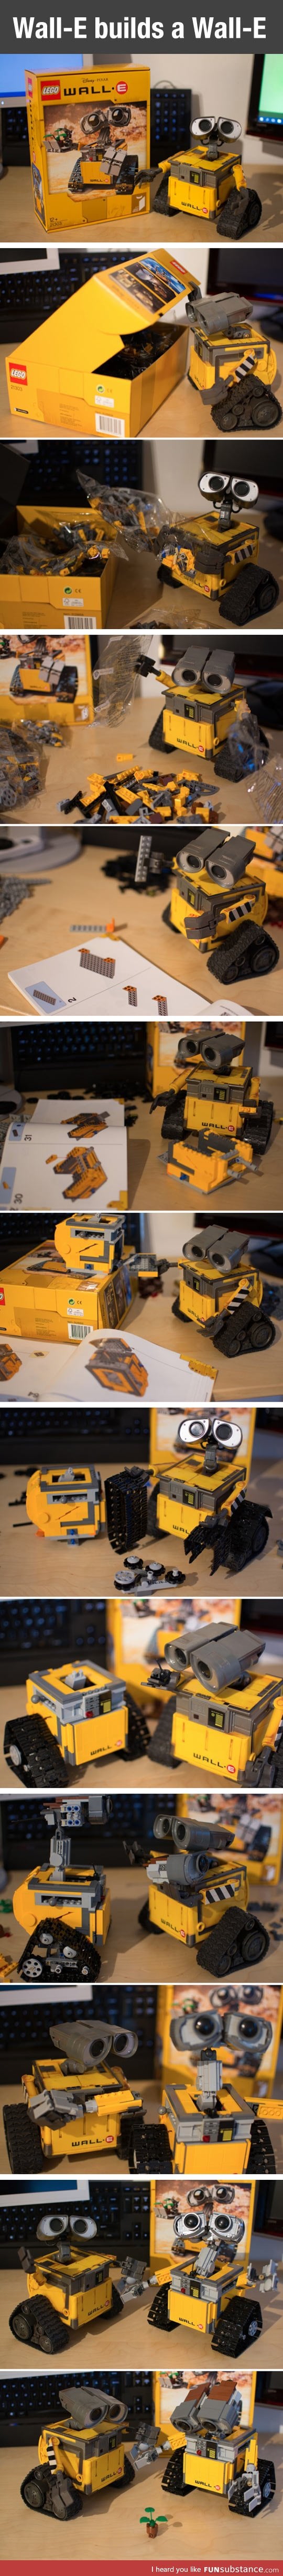 When A Wall-E Builds A Wall-E